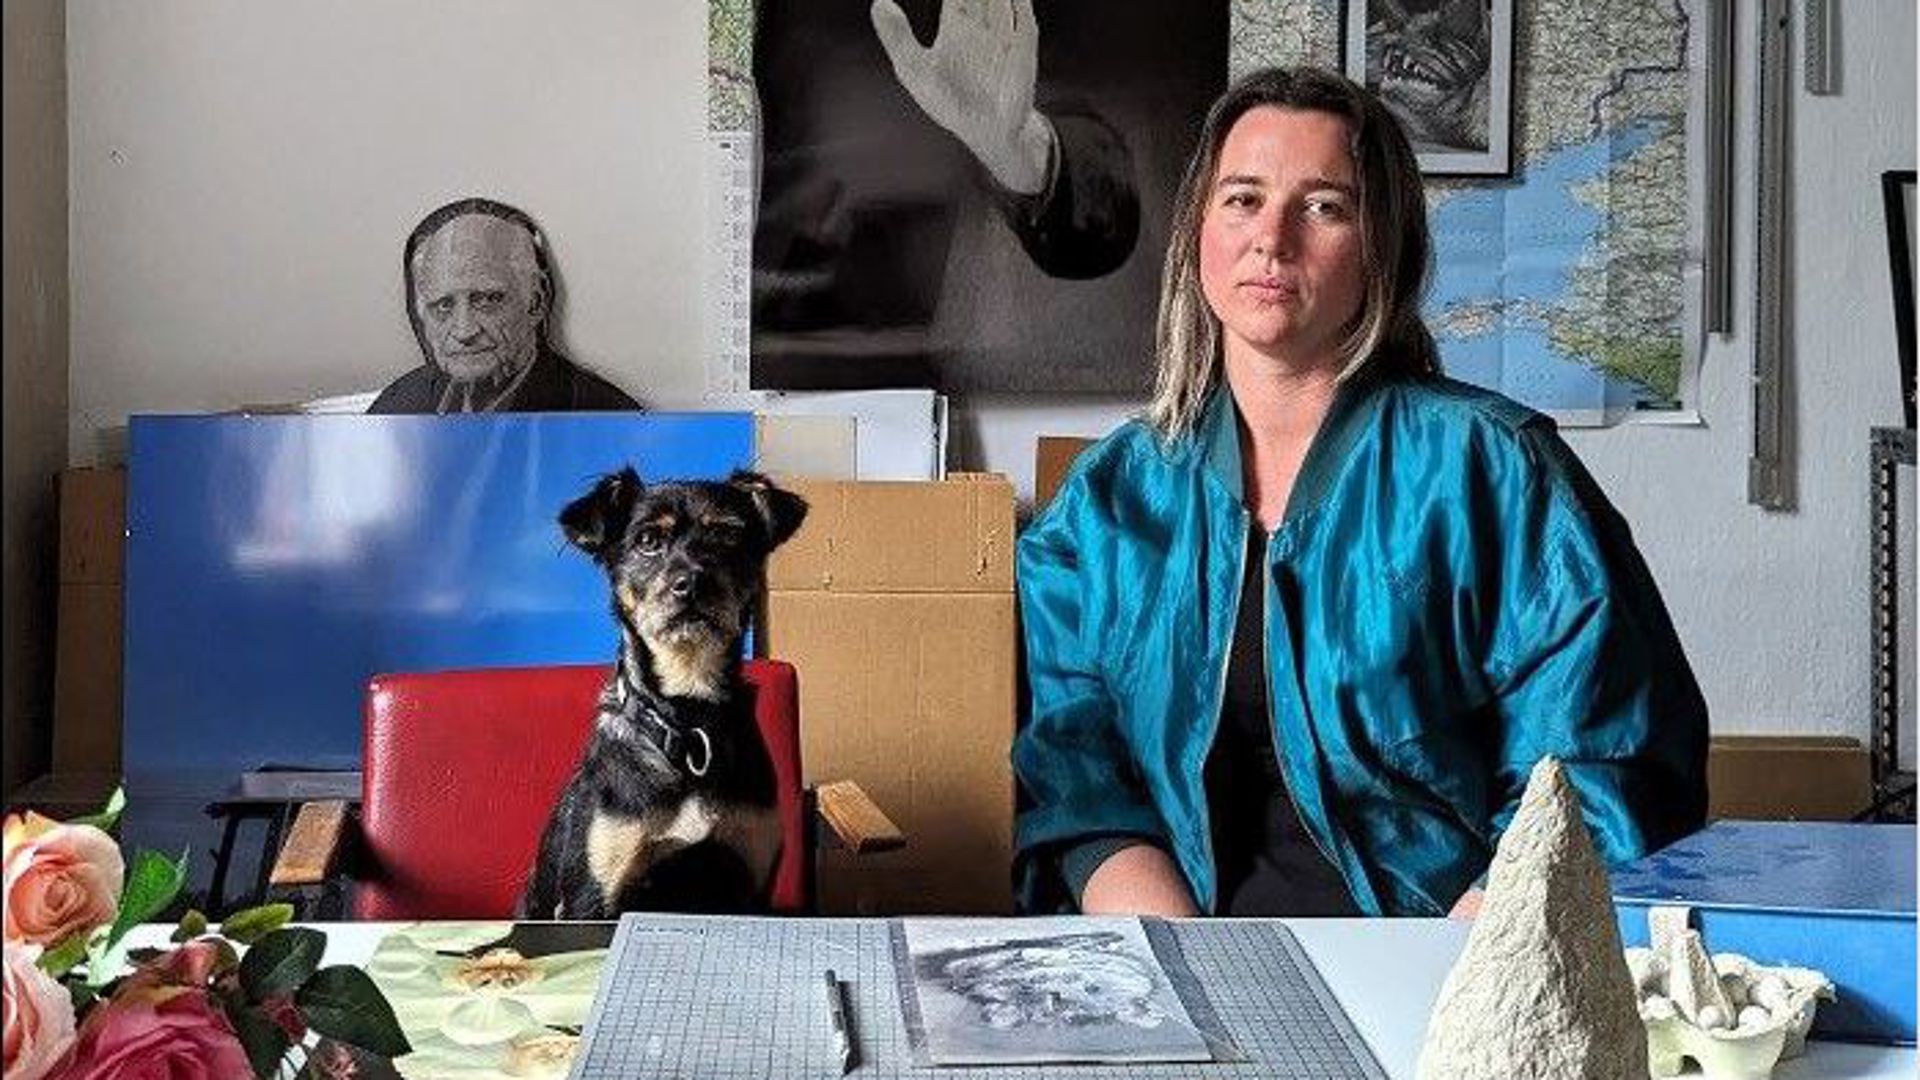 Die Künstlerin Katharina Baumann an einem Tisch mit Kunstwerken neben einem Hund.